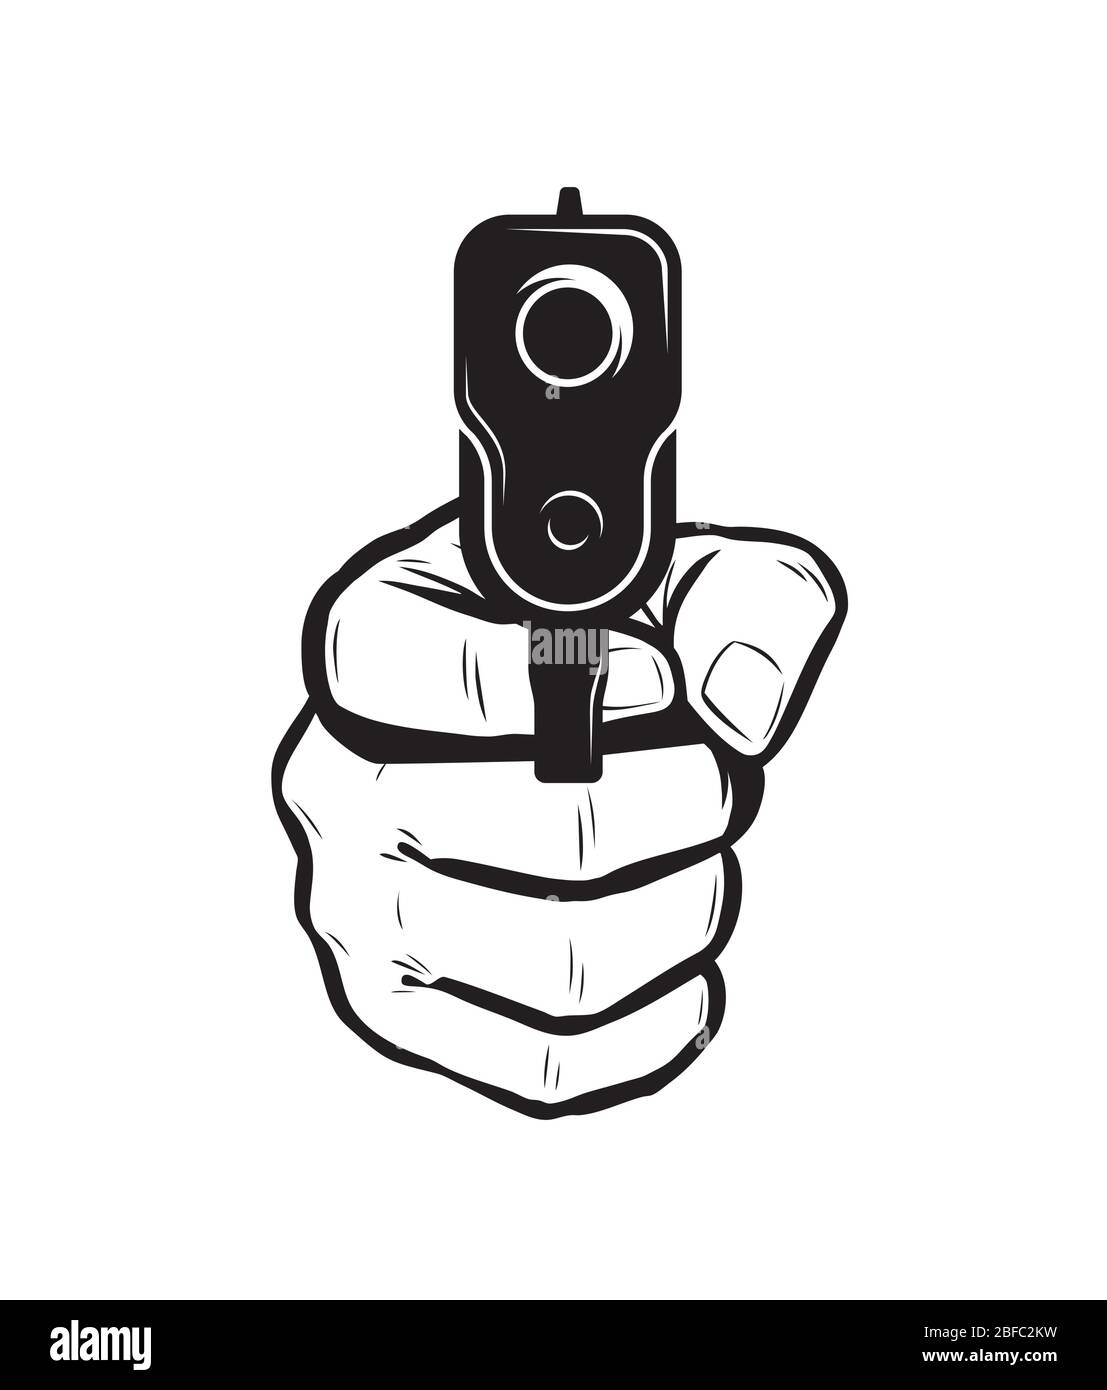 Gun in hand. Firearm, pistol vector illustration Stock Vector